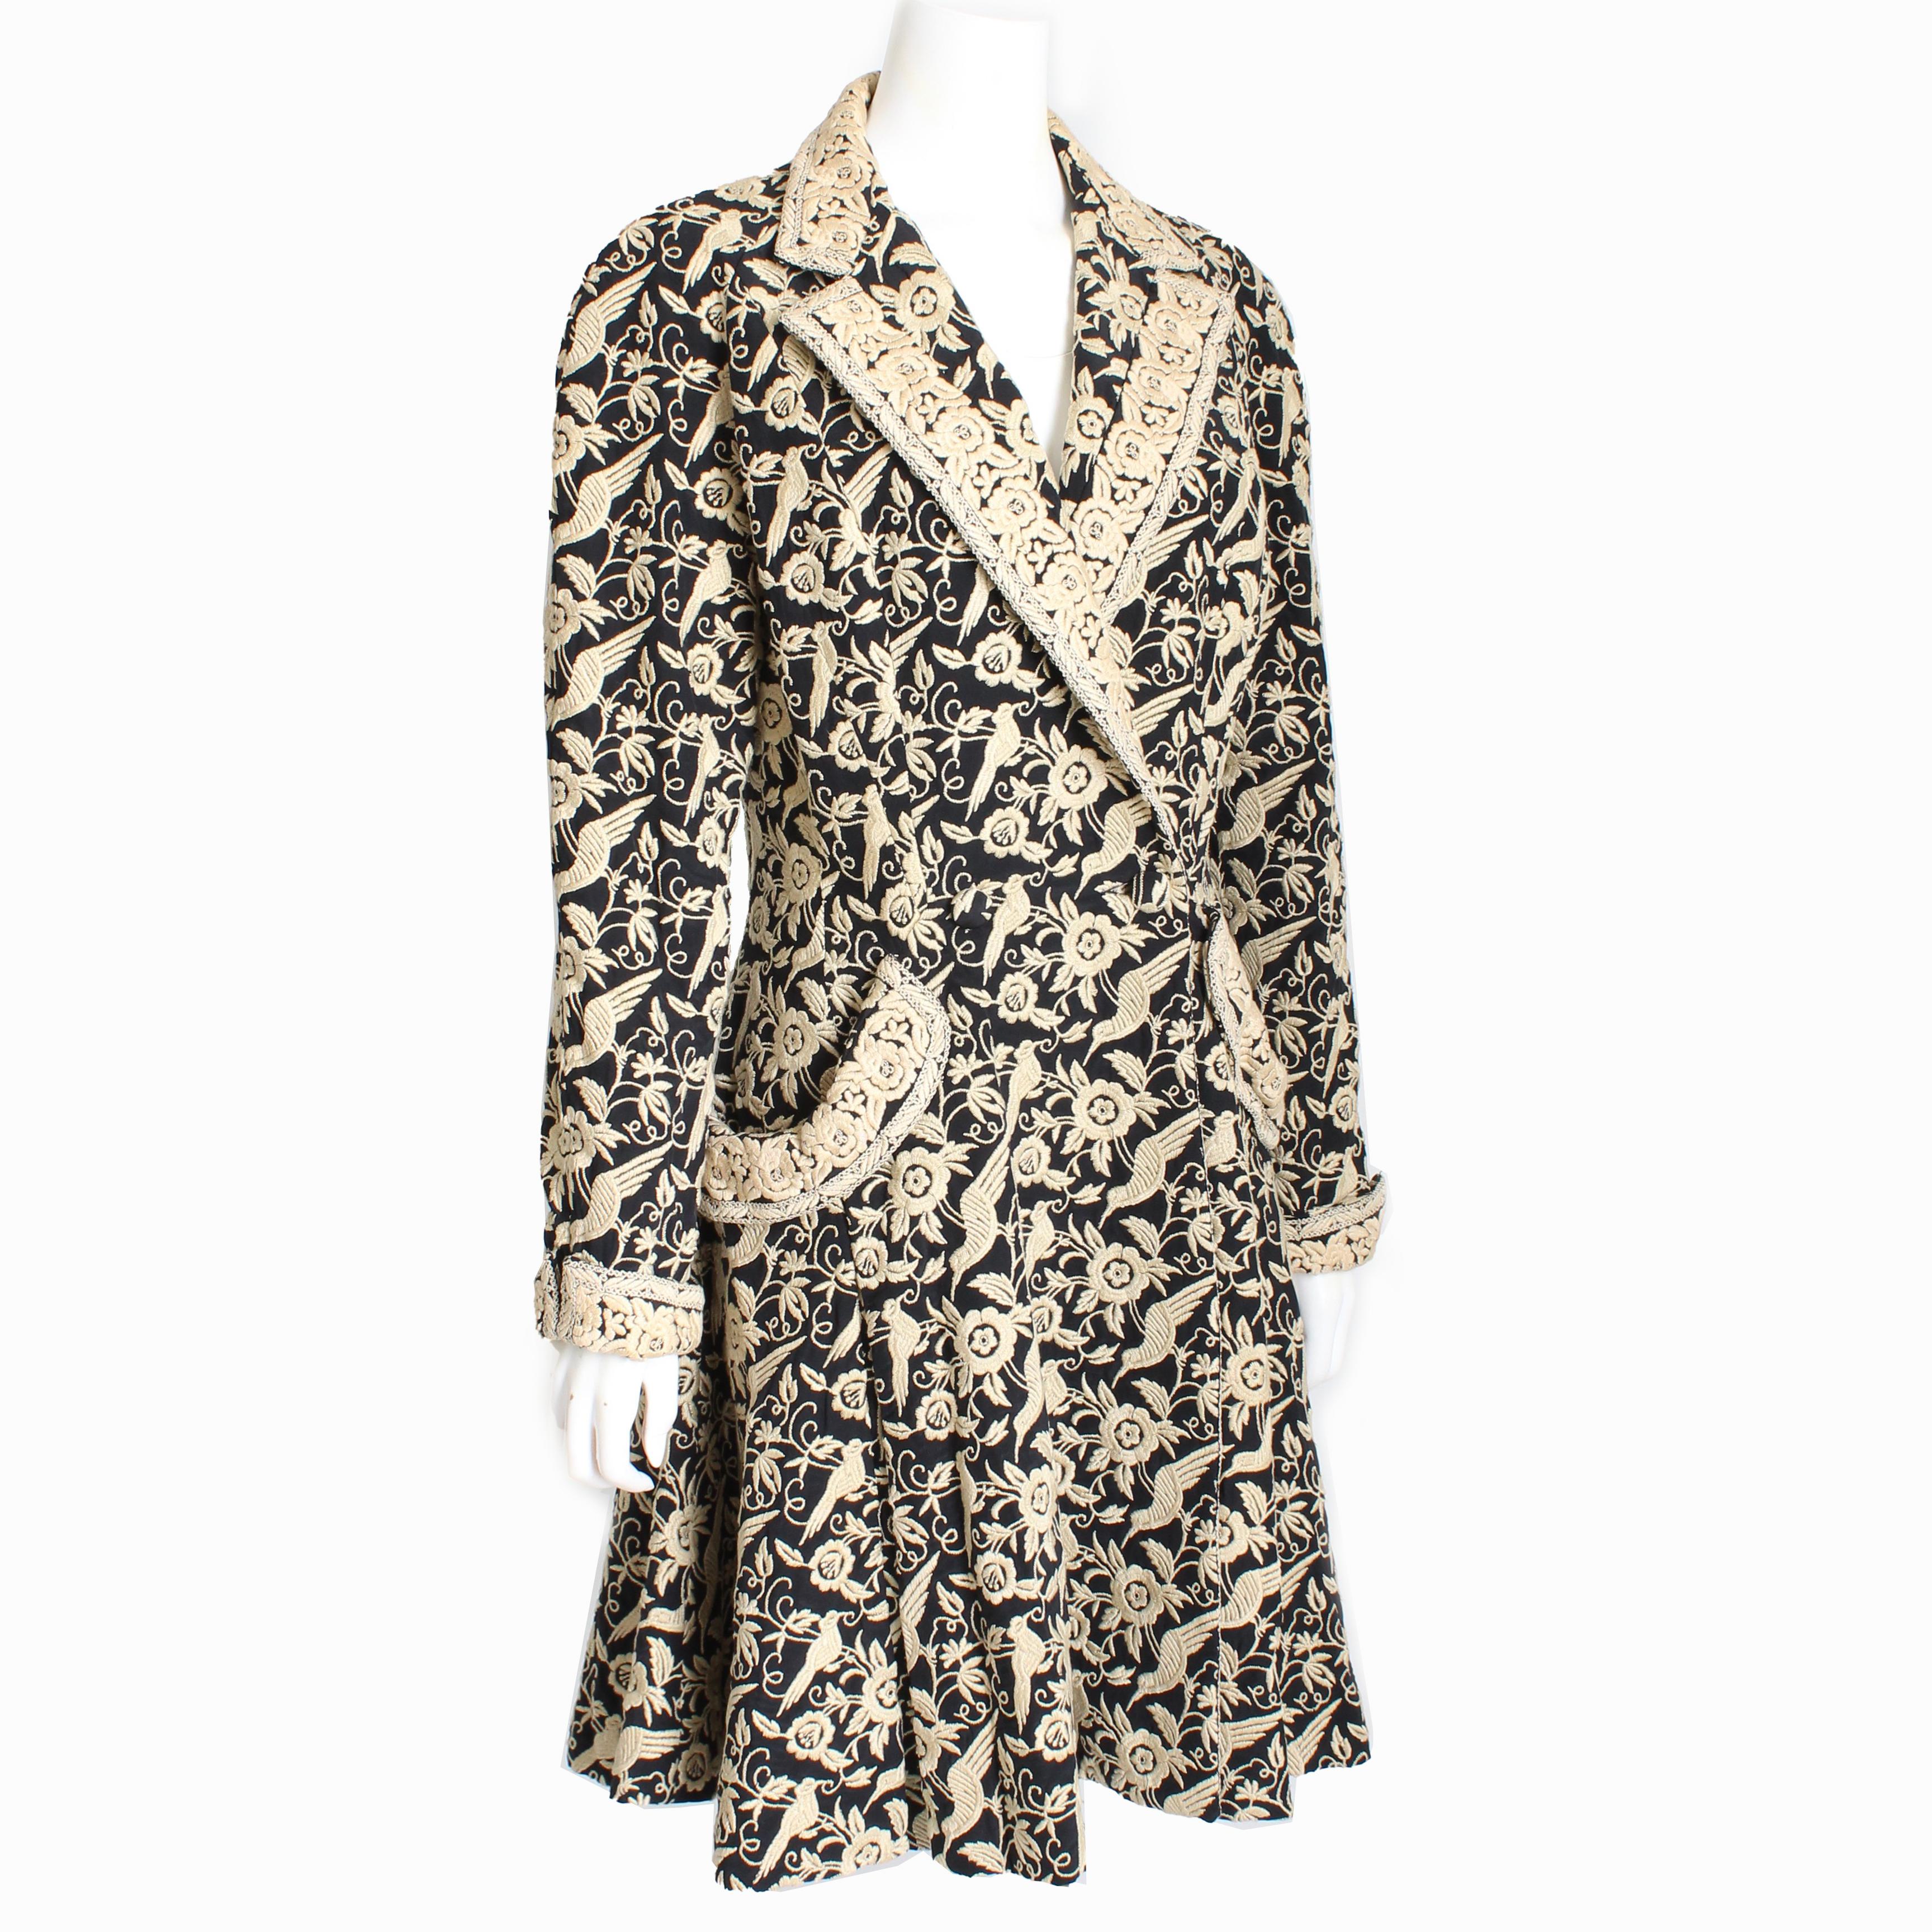 Gebrauchter Vintage-Mantel im Prinzessinnen-Stil von Norma Kamali, wahrscheinlich aus den frühen 90ern.  Es ist aus schwarzer Seide gefertigt und mit einem Muster aus Vögeln und Blumen bestickt, mit
Ärmel mit Manschetten und übergroße Taschen.  Er